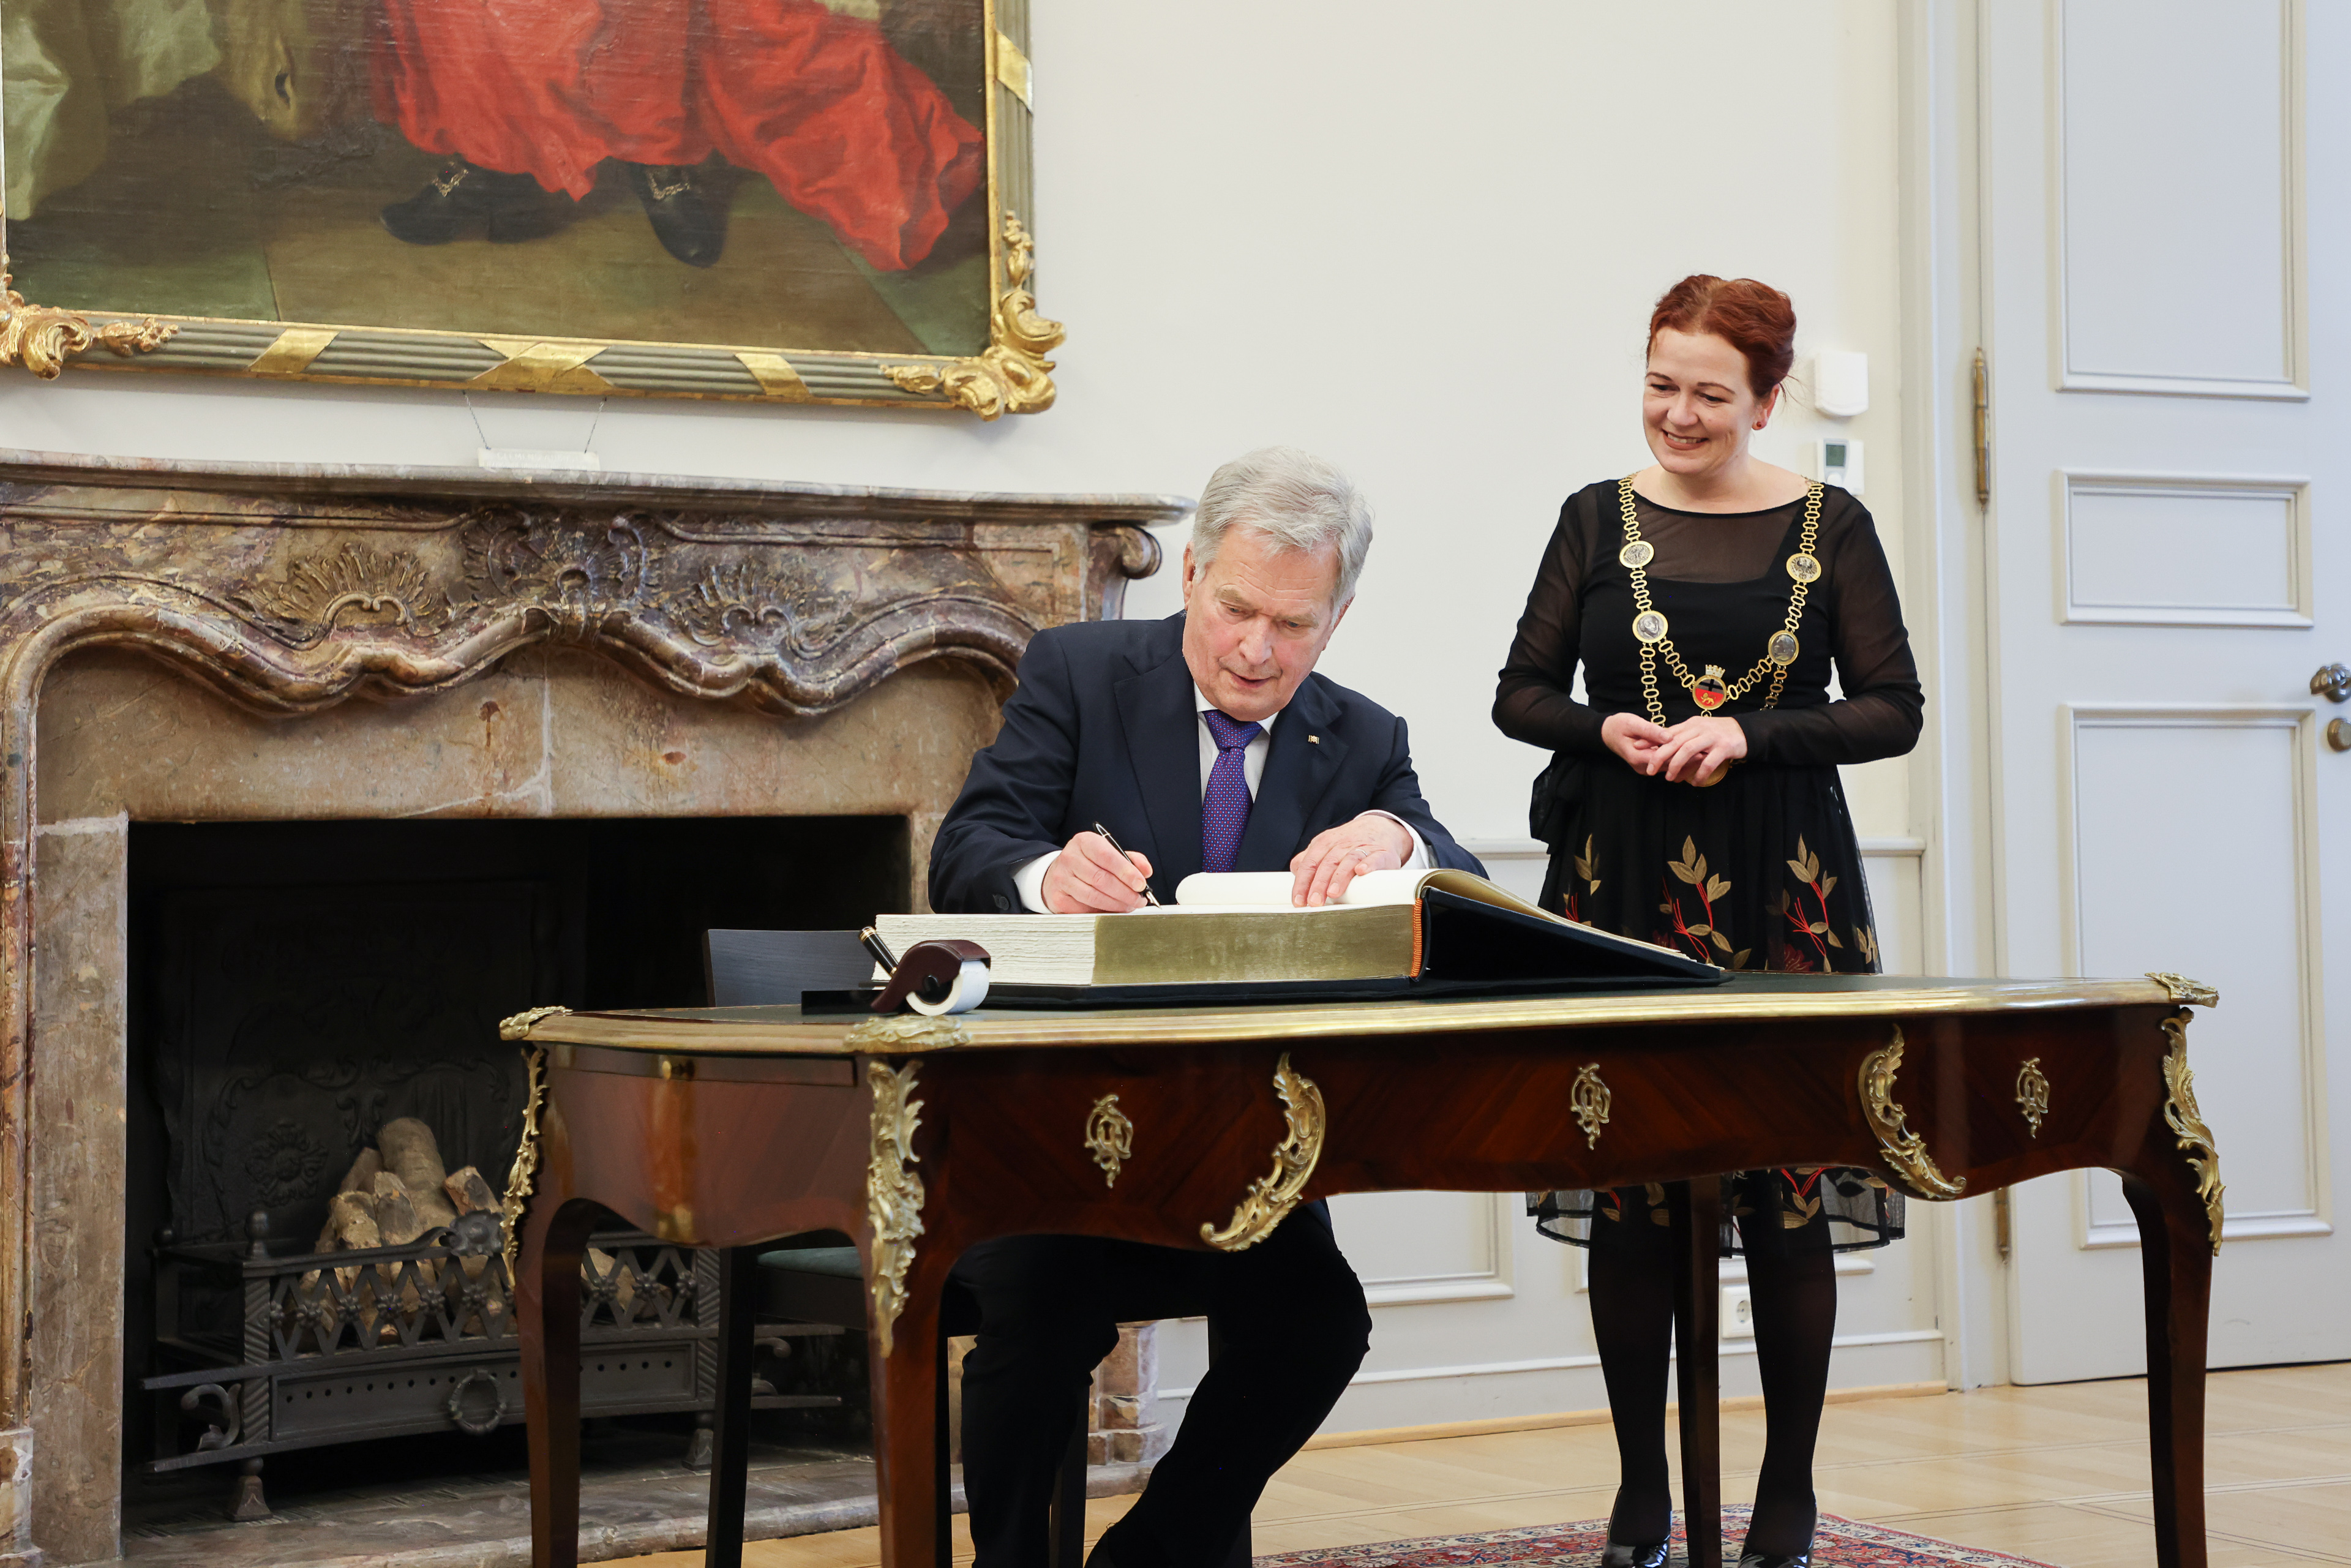 Bonnin vanhassa kaupungissa presidentti Niinistö kirjoitti nimensä kaupungintalon kultaiseen kirjaan. Kuva: Riikka Hietajärvi/Tasavallan presidentin kanslia